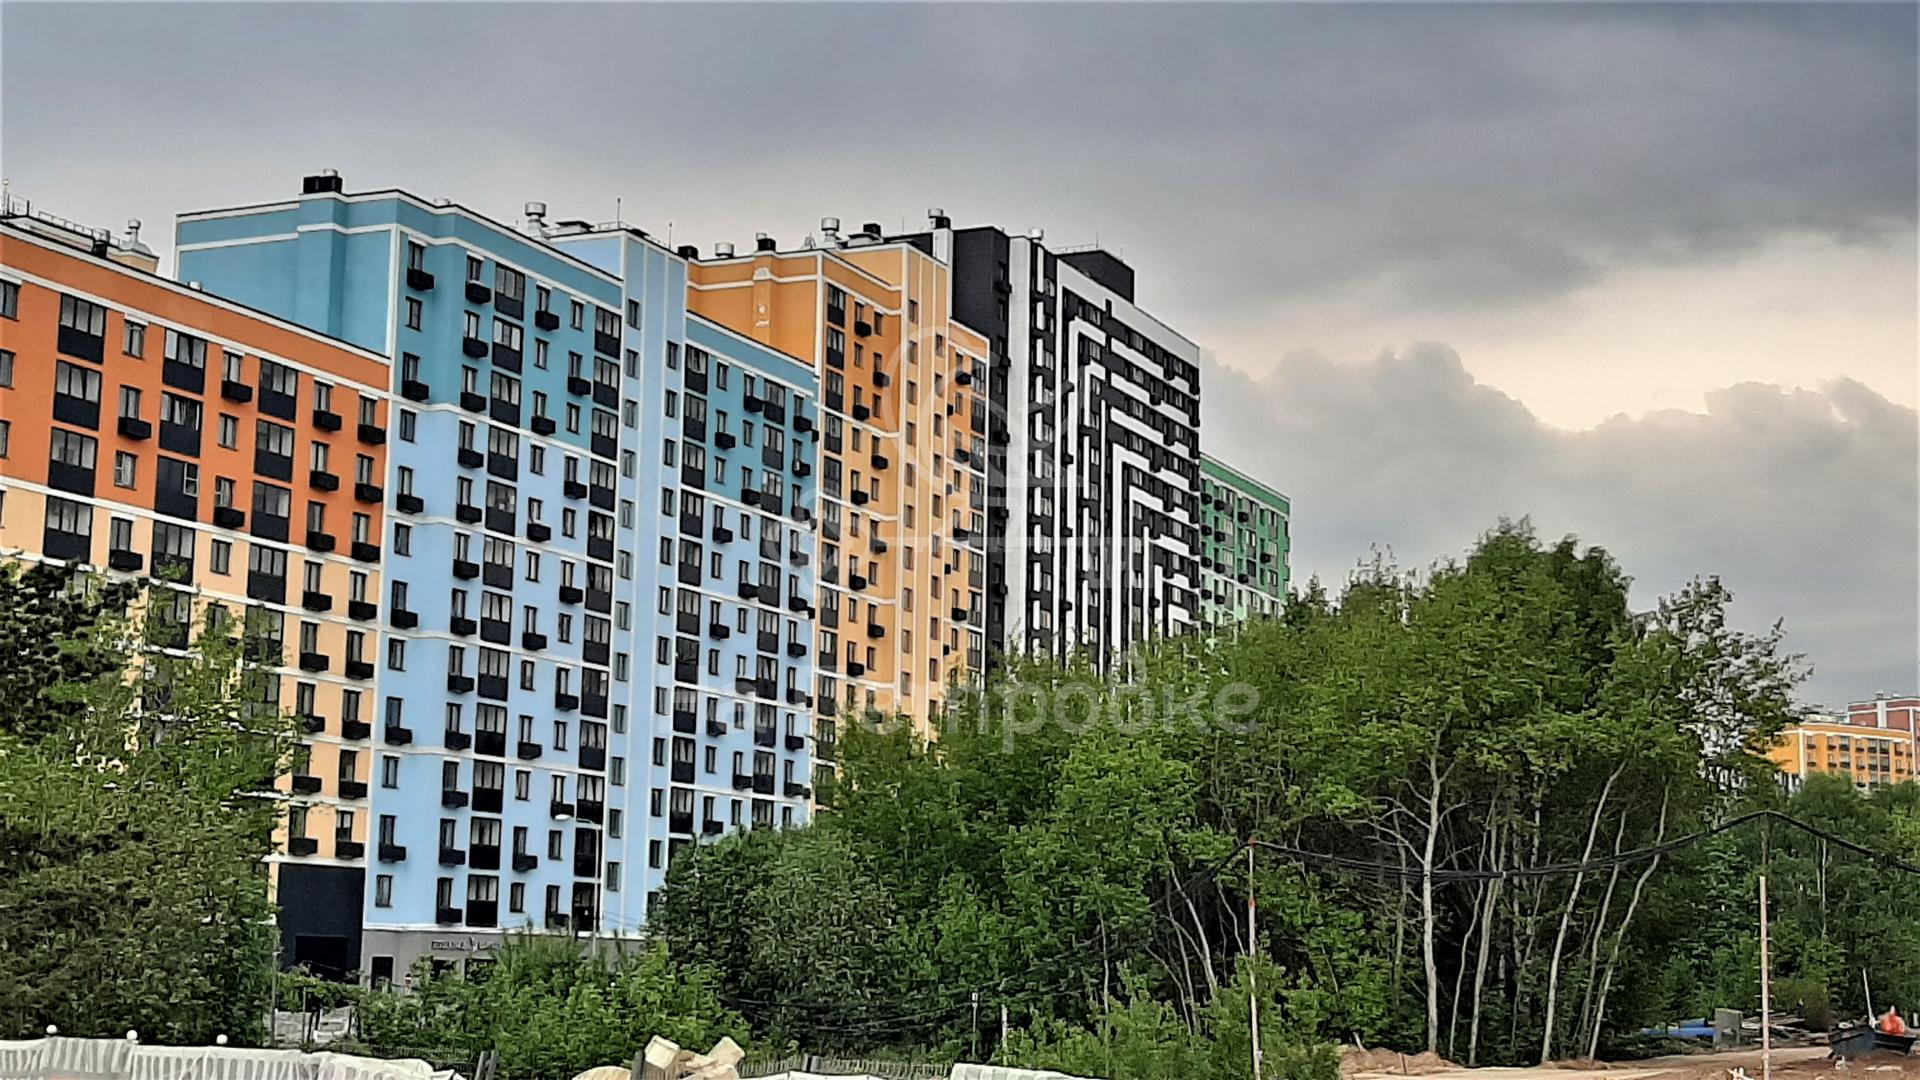 Продам квартиру в Москве по адресу район Солнцево, площадь 531 квм Недвижимость Москва (Россия)  Рядом с комплексом находятся бульвар и центральный парк